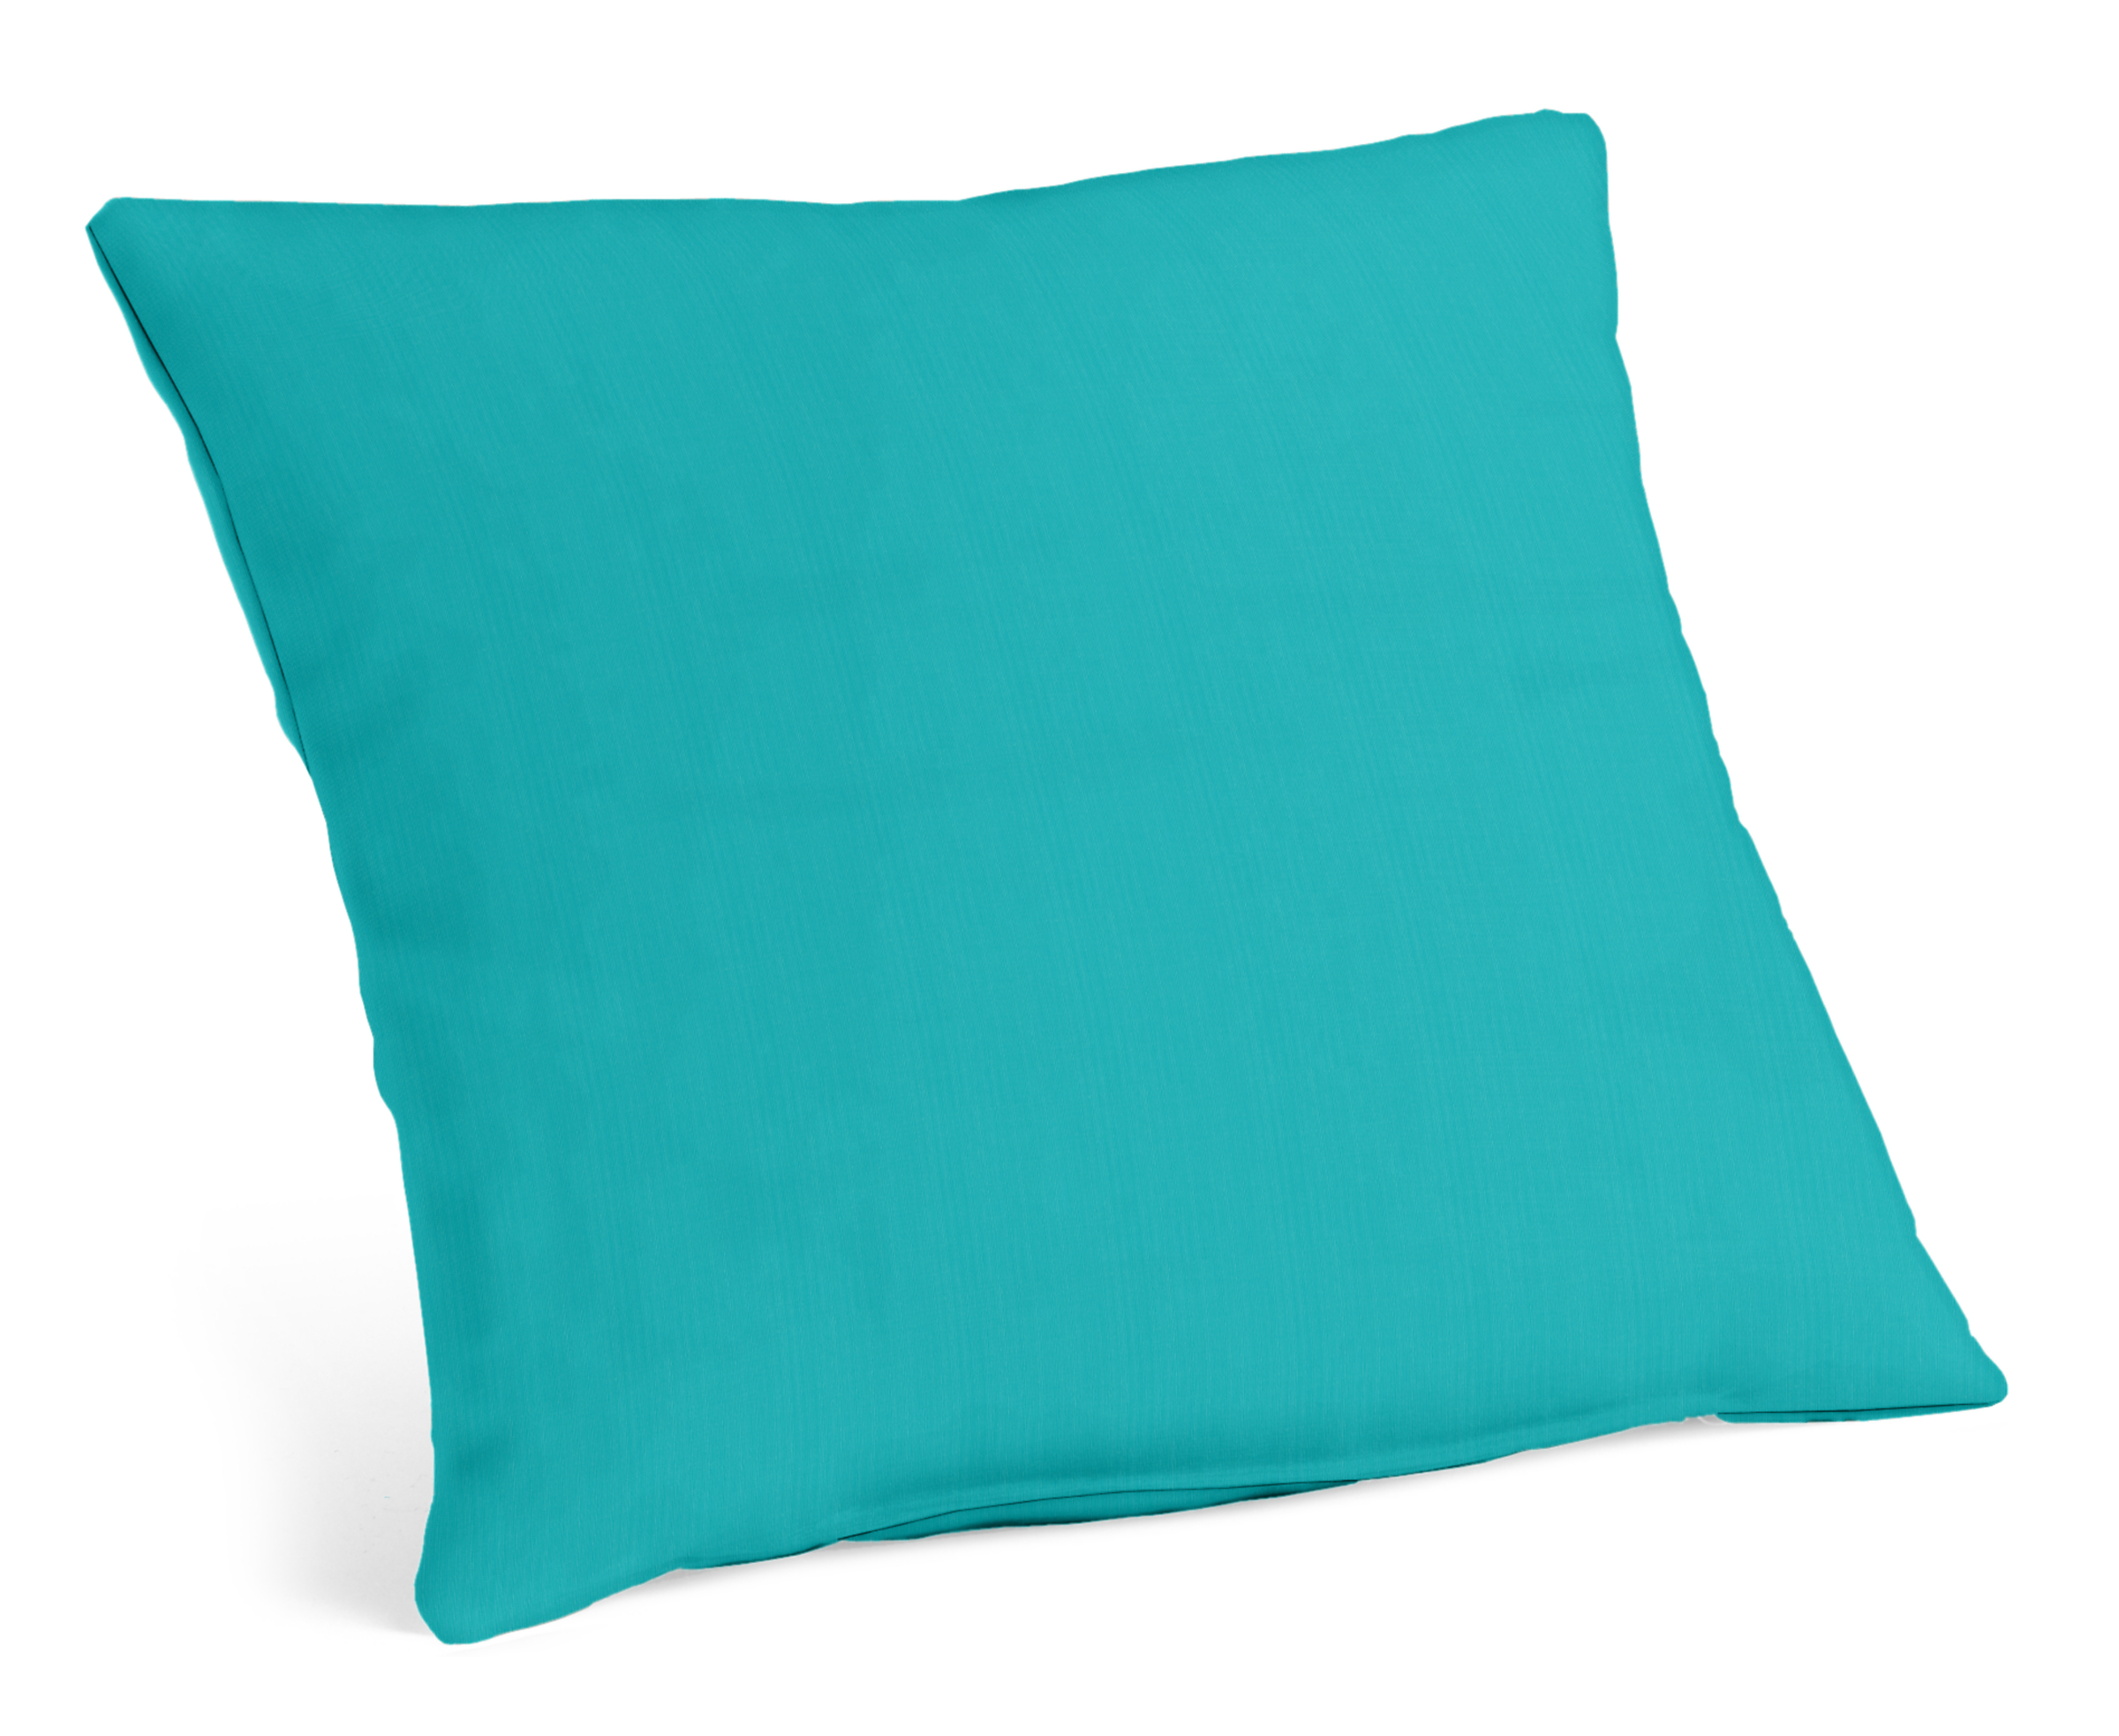 Hue 20w 20h Outdoor Pillow in Sunbrella Canvas Ocean